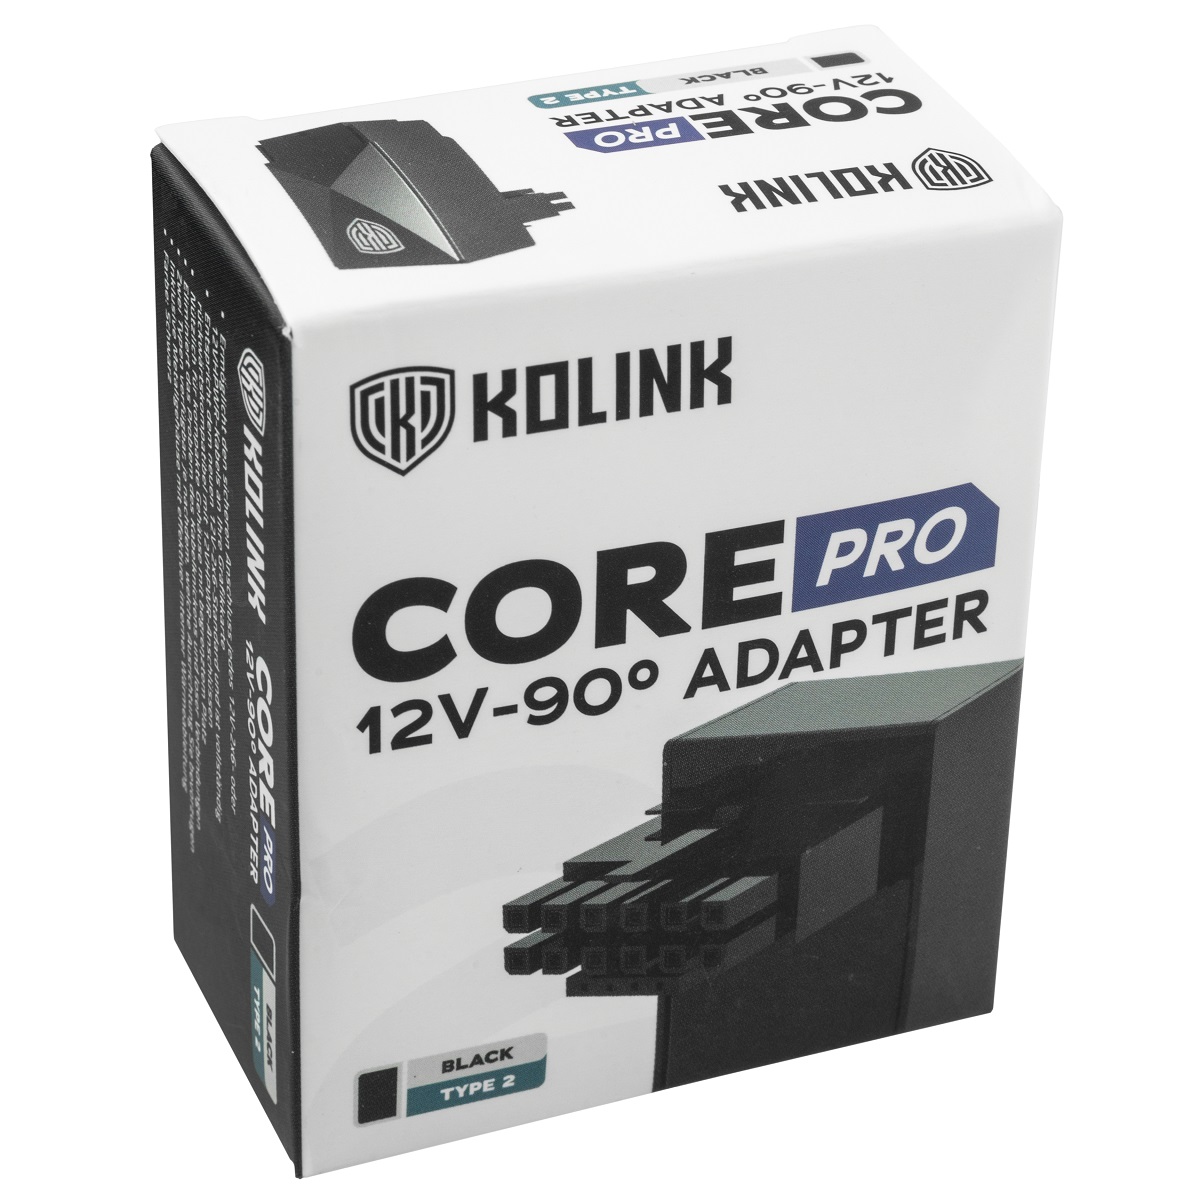 Kolink - Kolink Core Pro 12VHPWR 16-Pin 90 Degree Adapter - Type 2